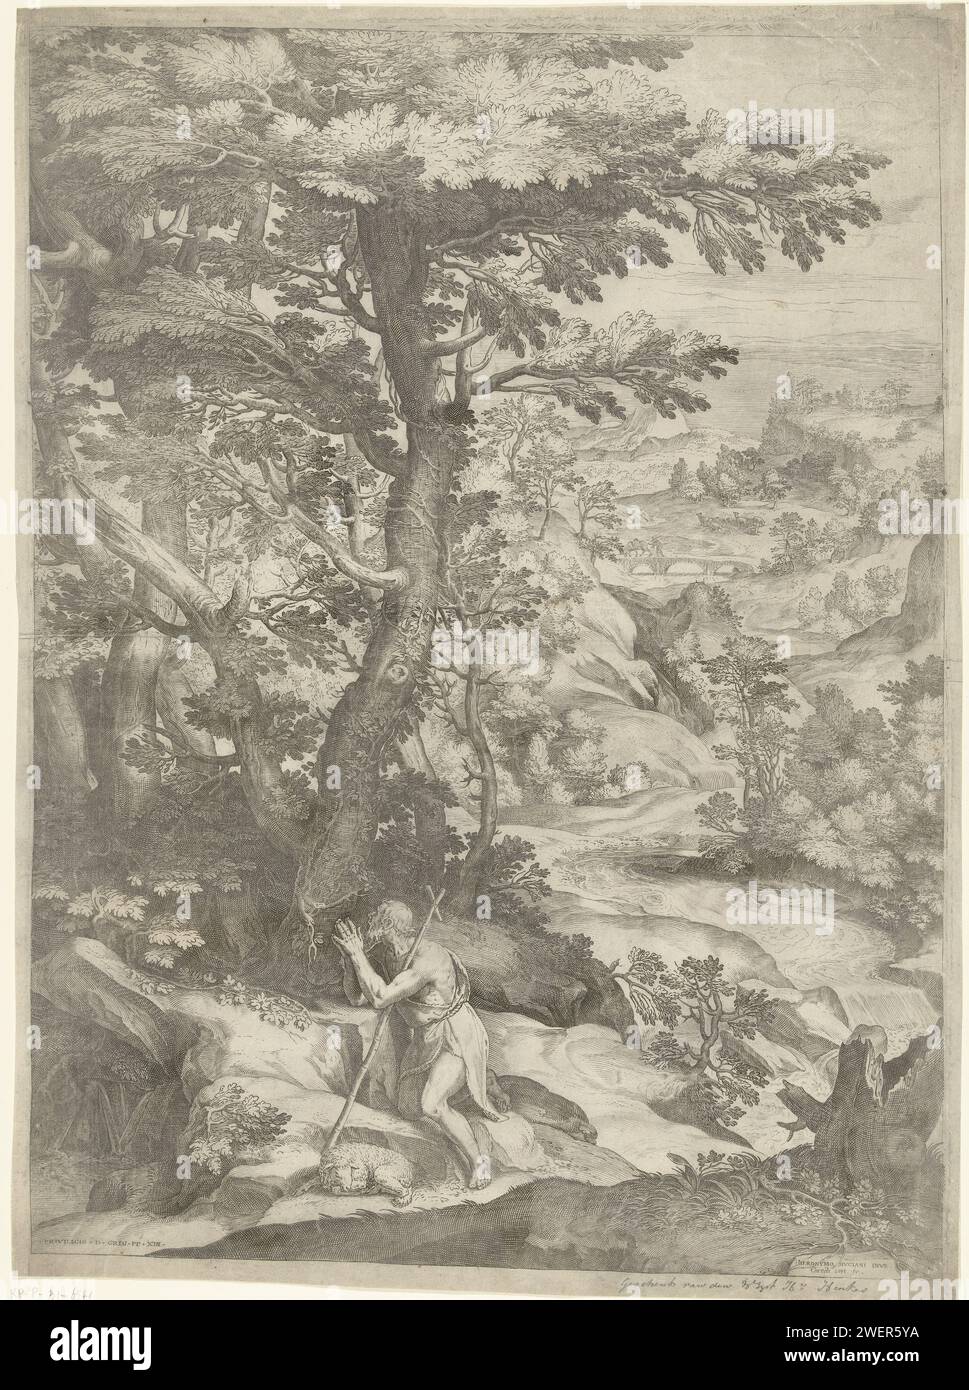 Paysage avec Johannes de Boper, Cornelis Cort, d'après Girolamo Muziano, c. 1573 - c. 1575 imprimer Paysage de la rivière roulante avec la prière de Jean le Baptiste. Il y a un agneau à côté de la figure agenouillée. Gravure sur papier Jean le Baptiste ; attributs possibles : livre, croix de roseau, coupe baptismale, nid d'abeille, agneau, personnel Banque D'Images